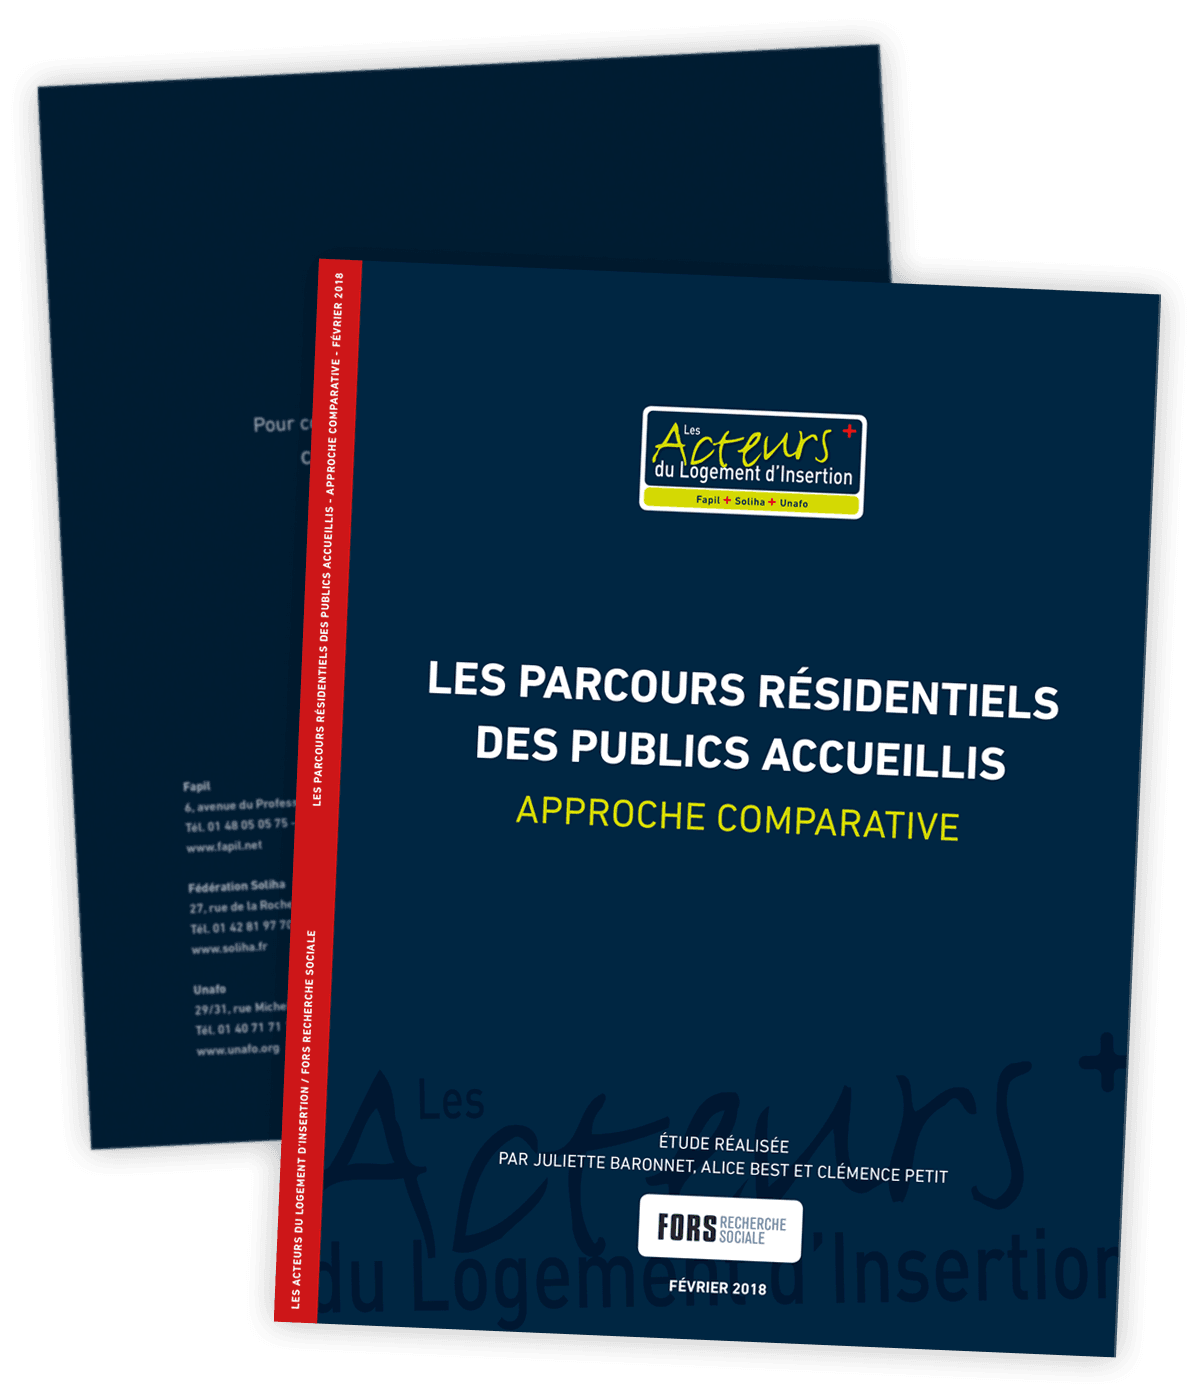 Rapport d'étude sur les parcours résidentiels créé pour Les Acteurs du Logement d'Insertion par Caramel & Paprika - Première et dernière pages de couverture du rapport complet